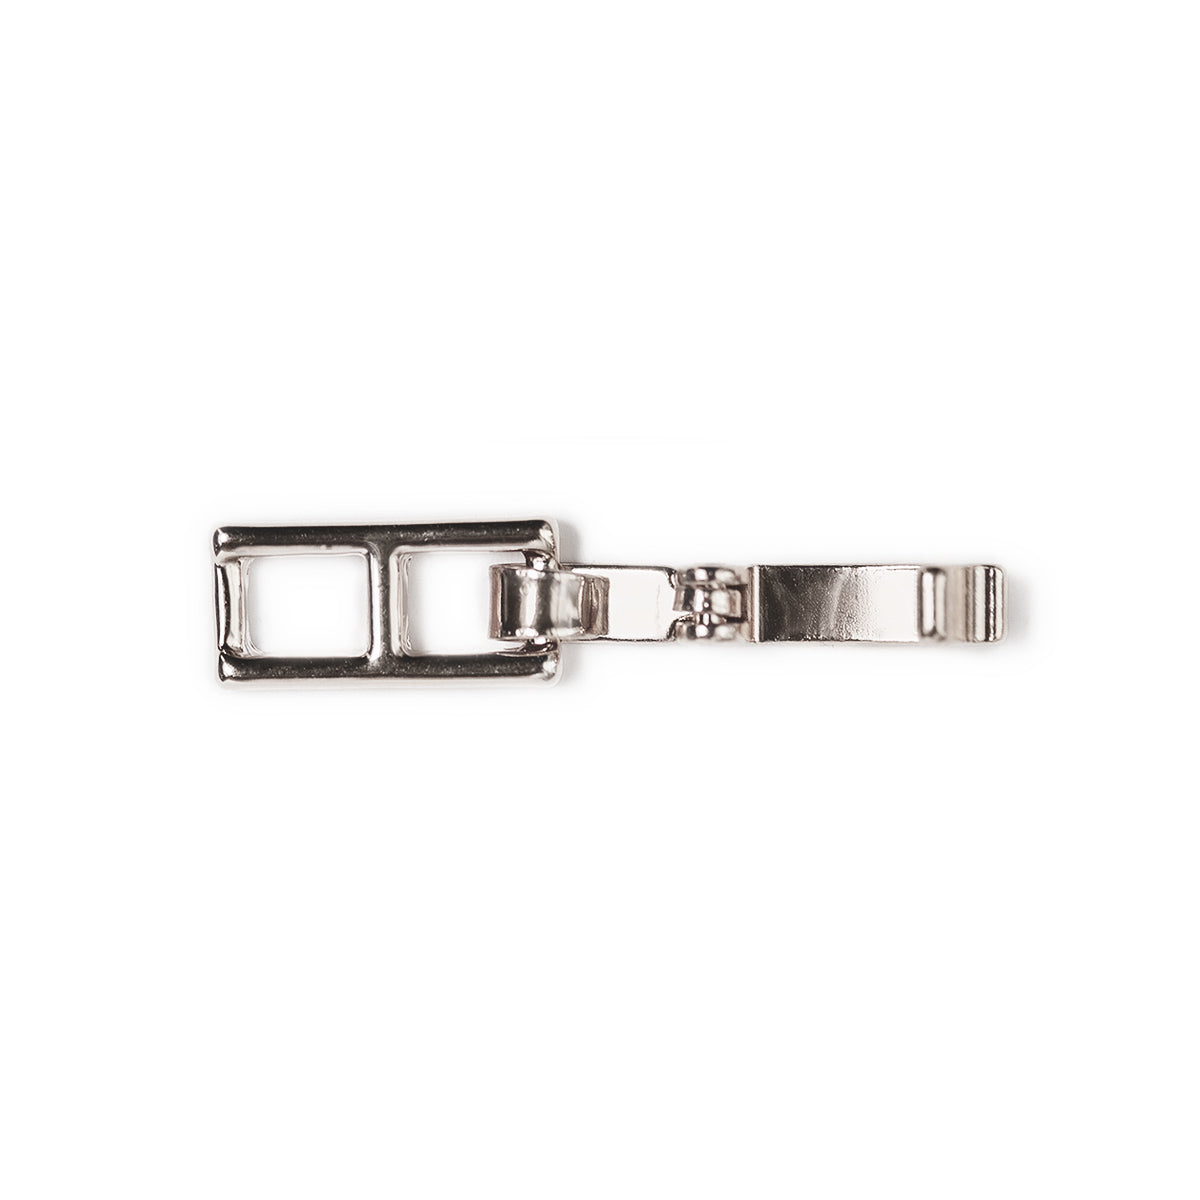 1/2 inch Flip Bracelet Extender in Silver